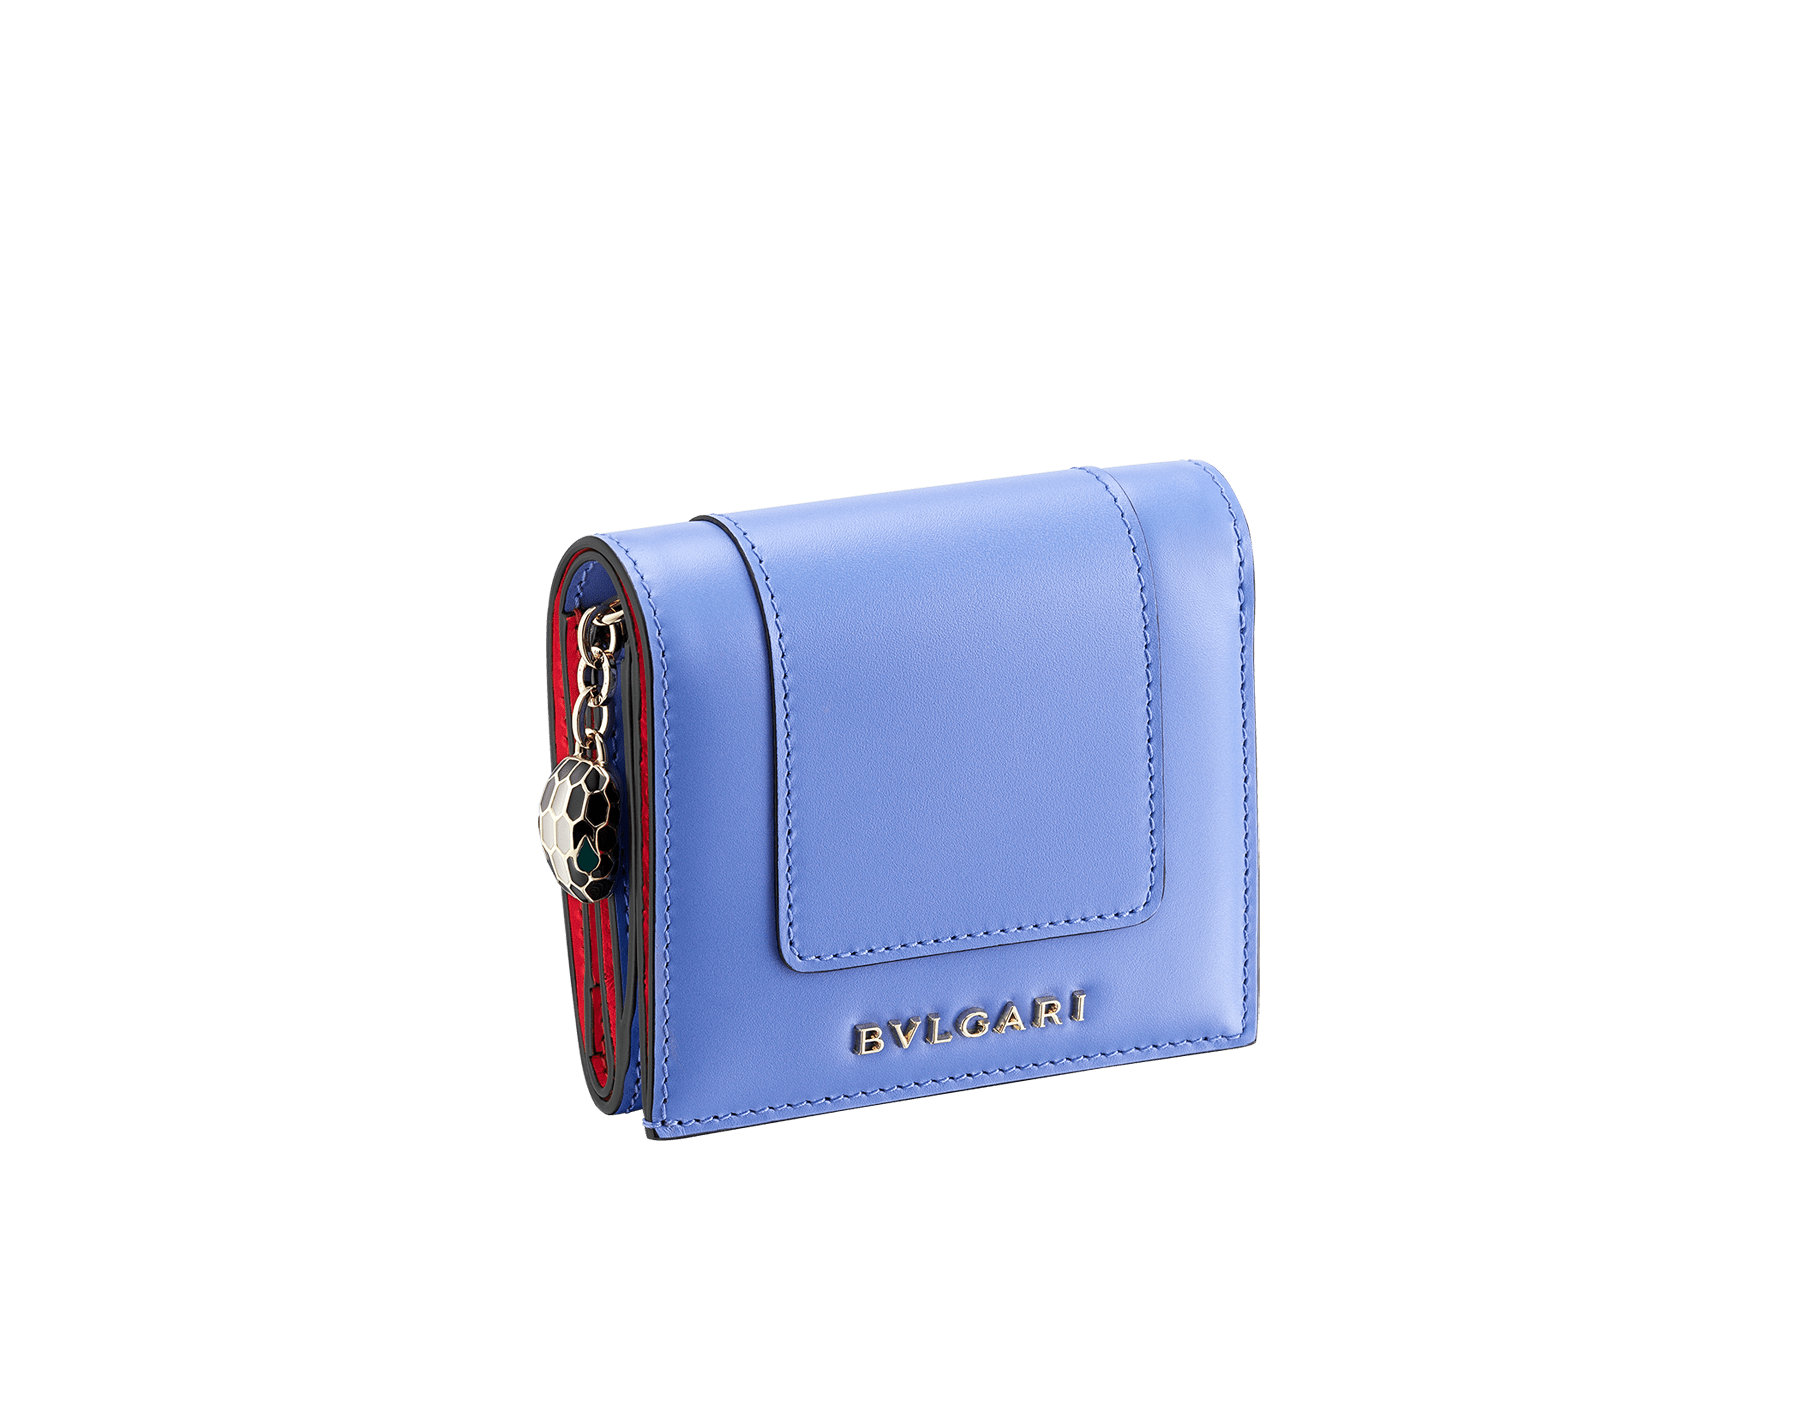 30代、40代、50代の女性におすすめの、憧れのハイブランドが仕立てる可愛いレディースミニ財布はBVLGARIのセルペンティ フォーエバー